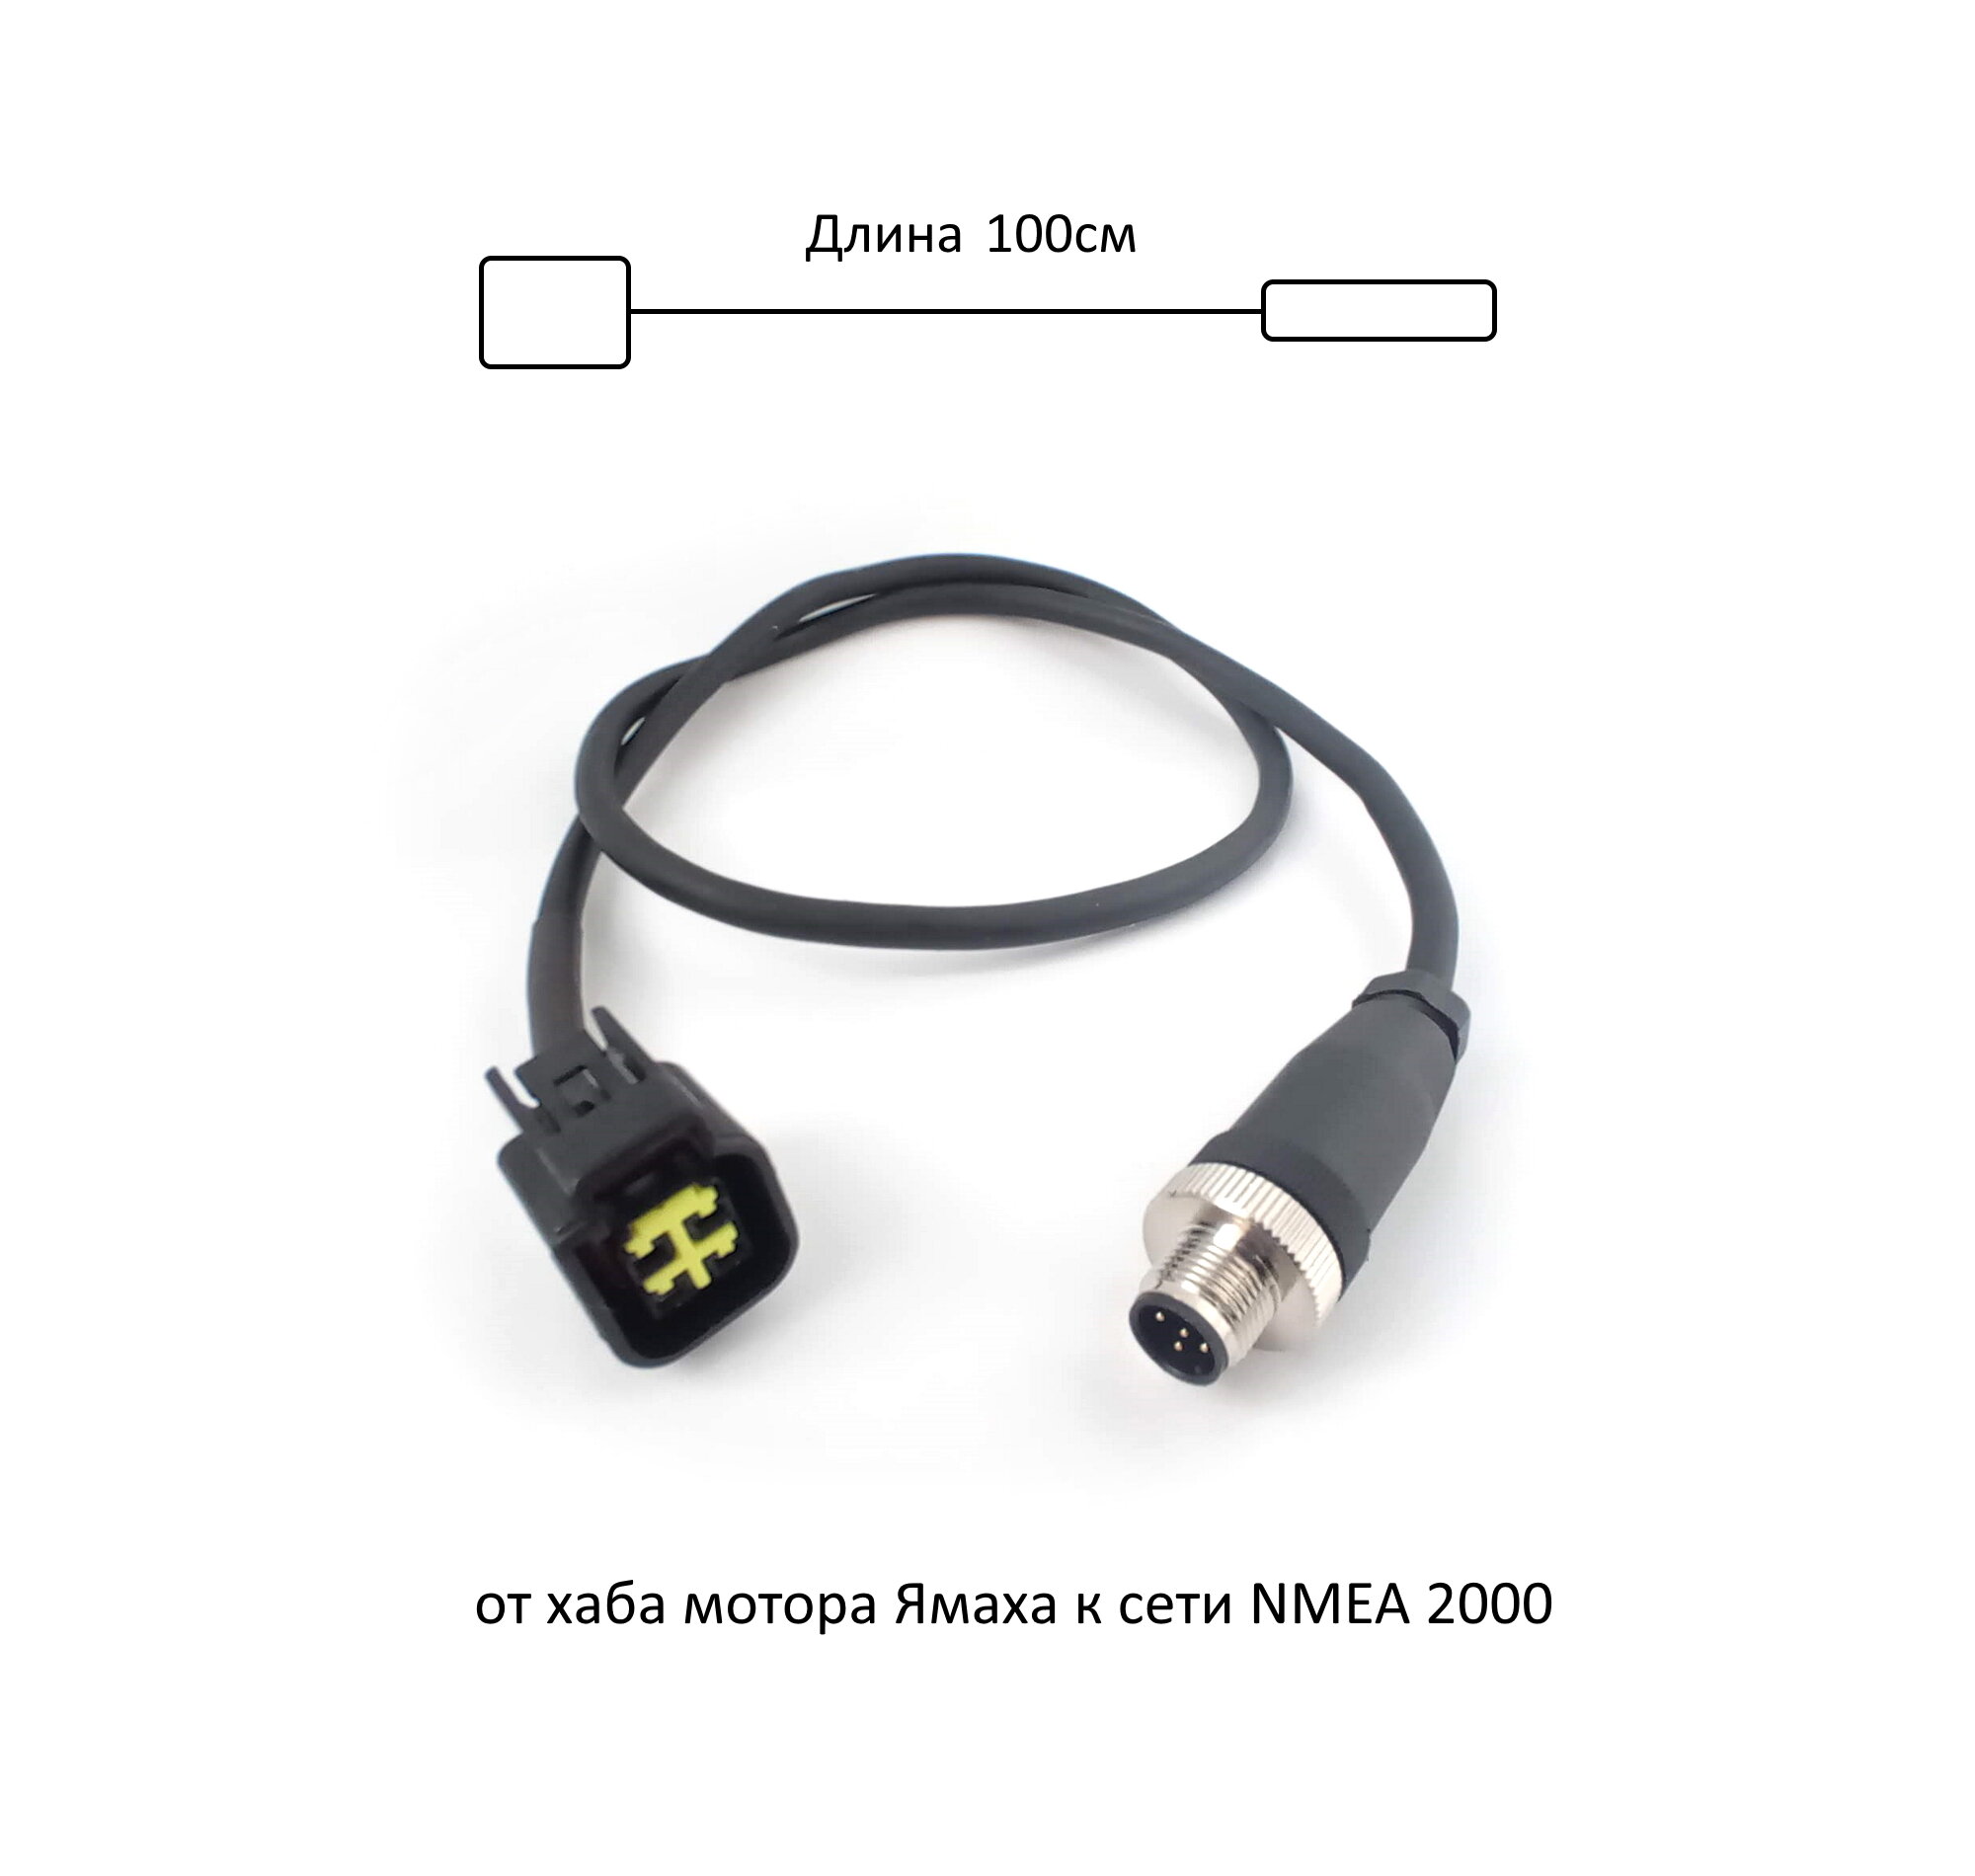 Интерфейсный кабель Yamaha Ямаха для двигателей и эхолотов (от хаба мотора к сети Nmea 2000)